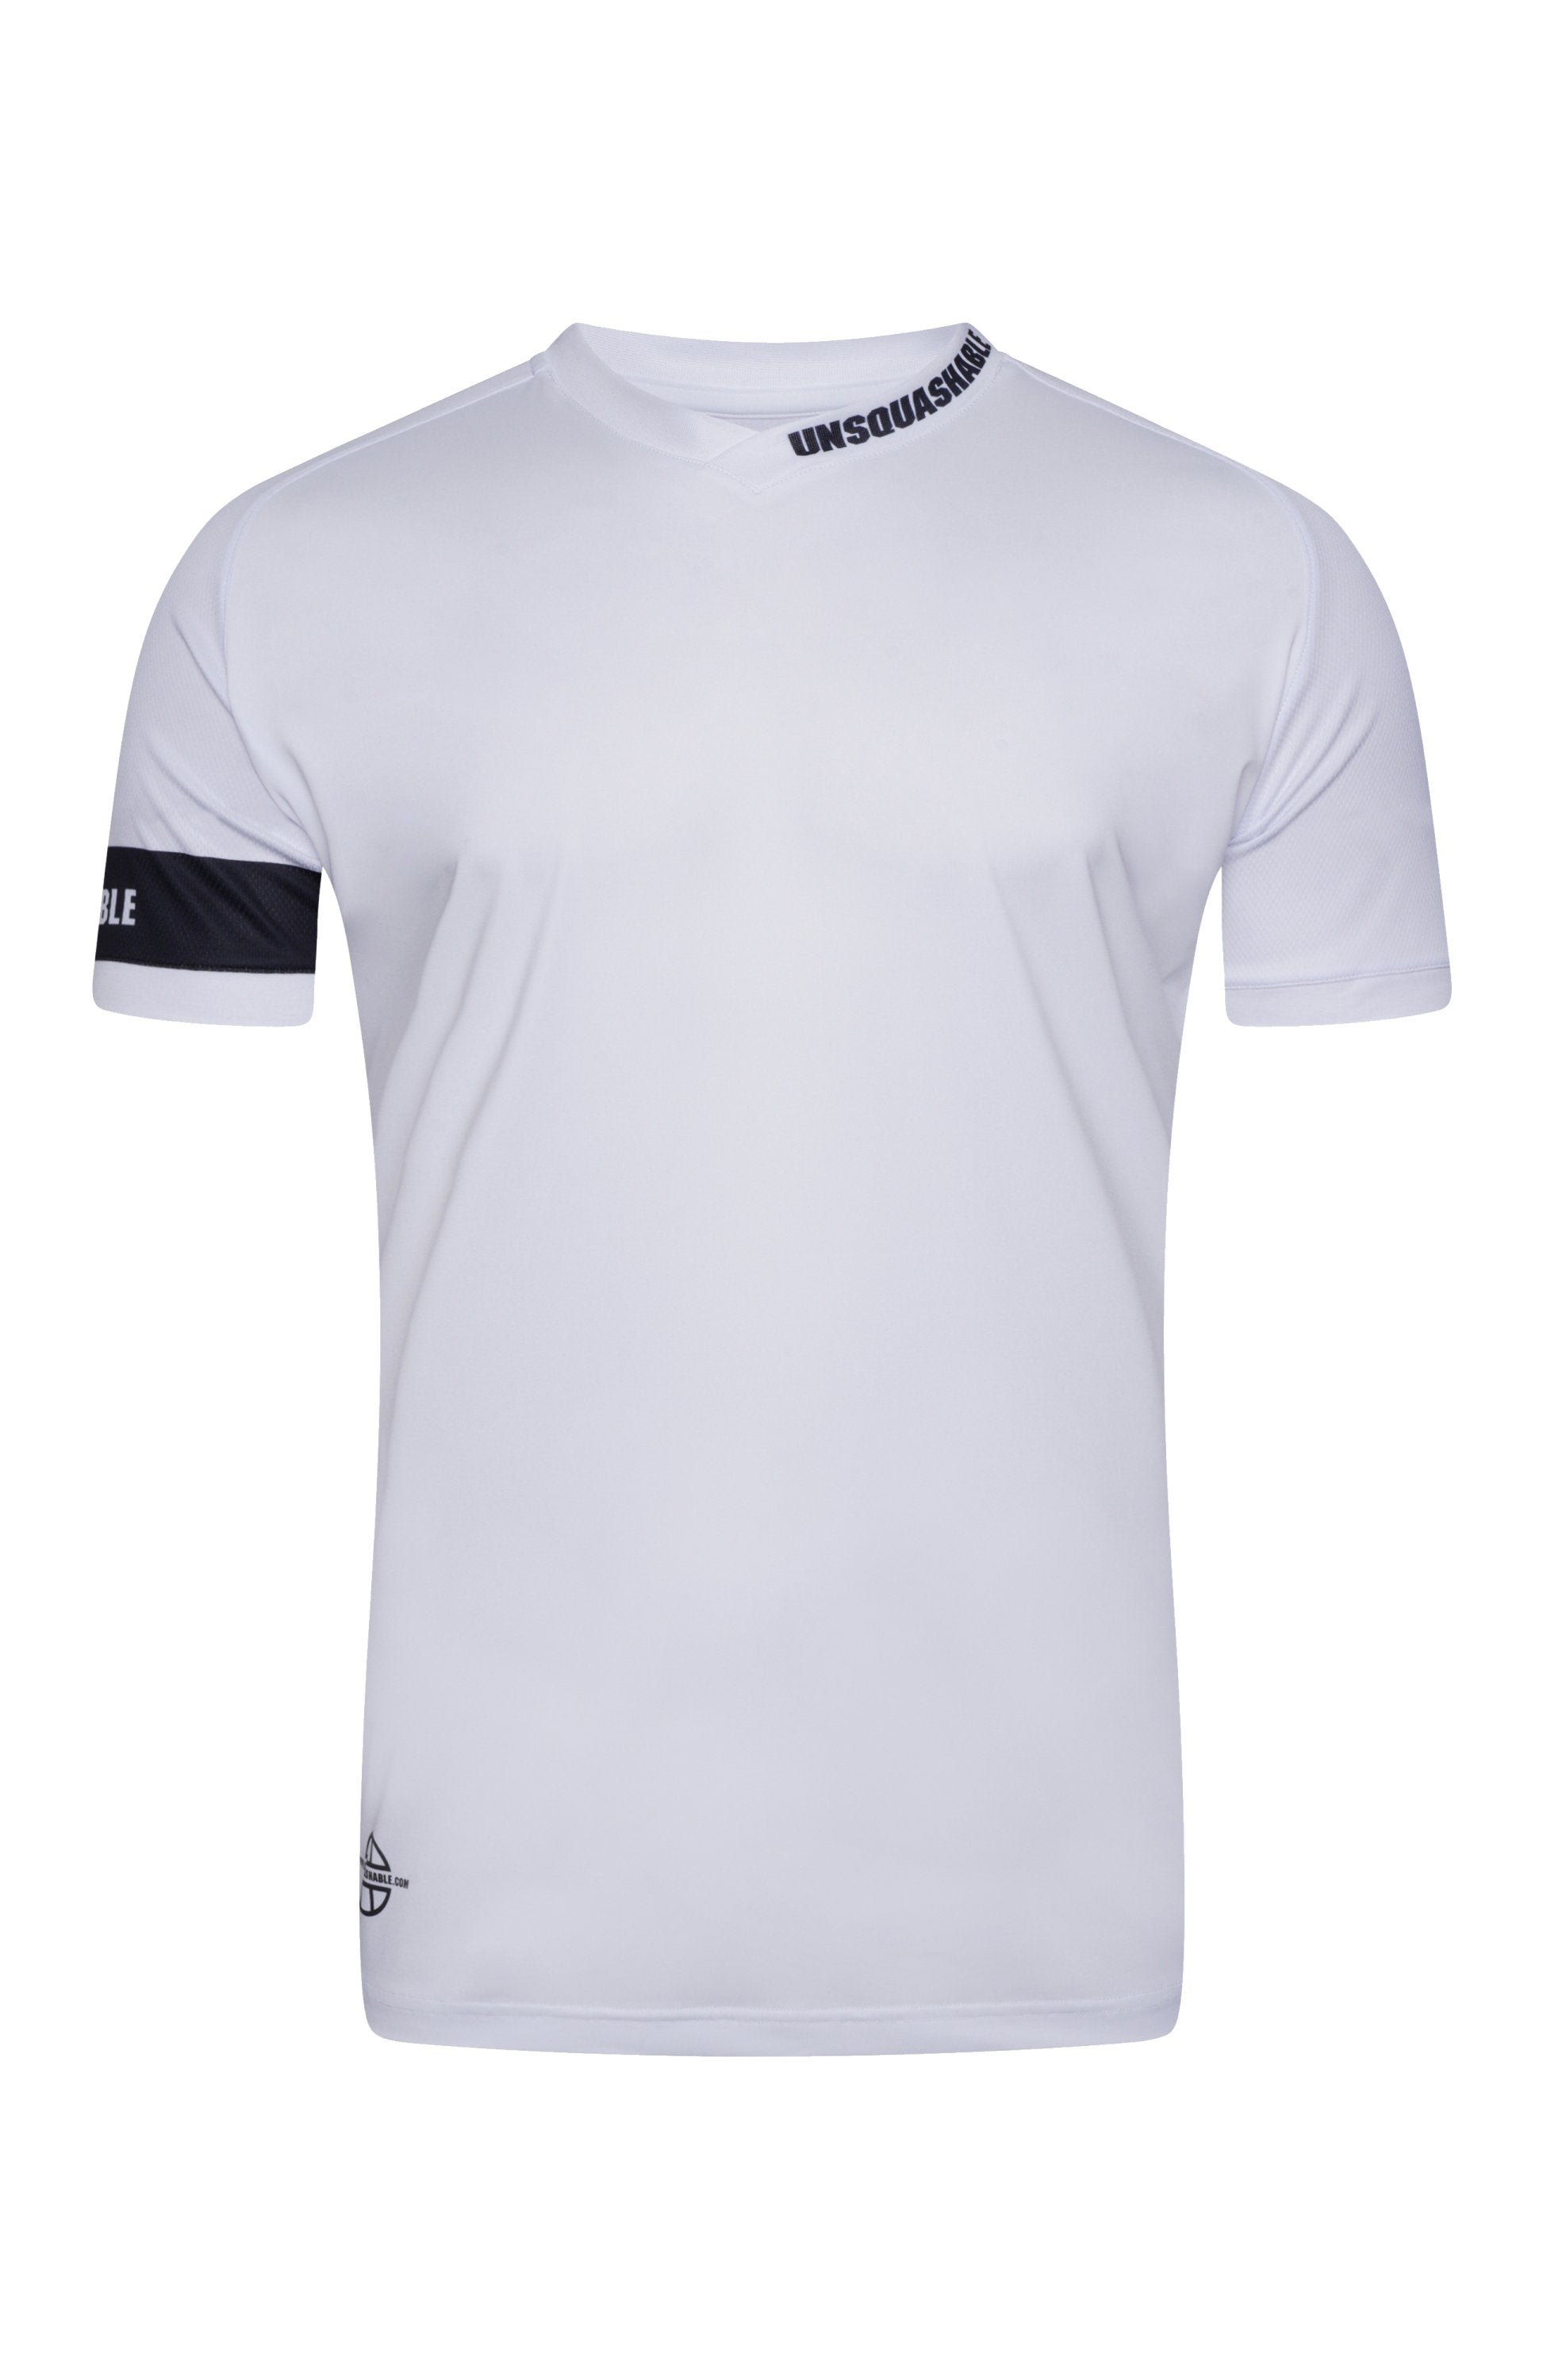 Unsquashable Tour-Tec Pro T-Shirt (White)